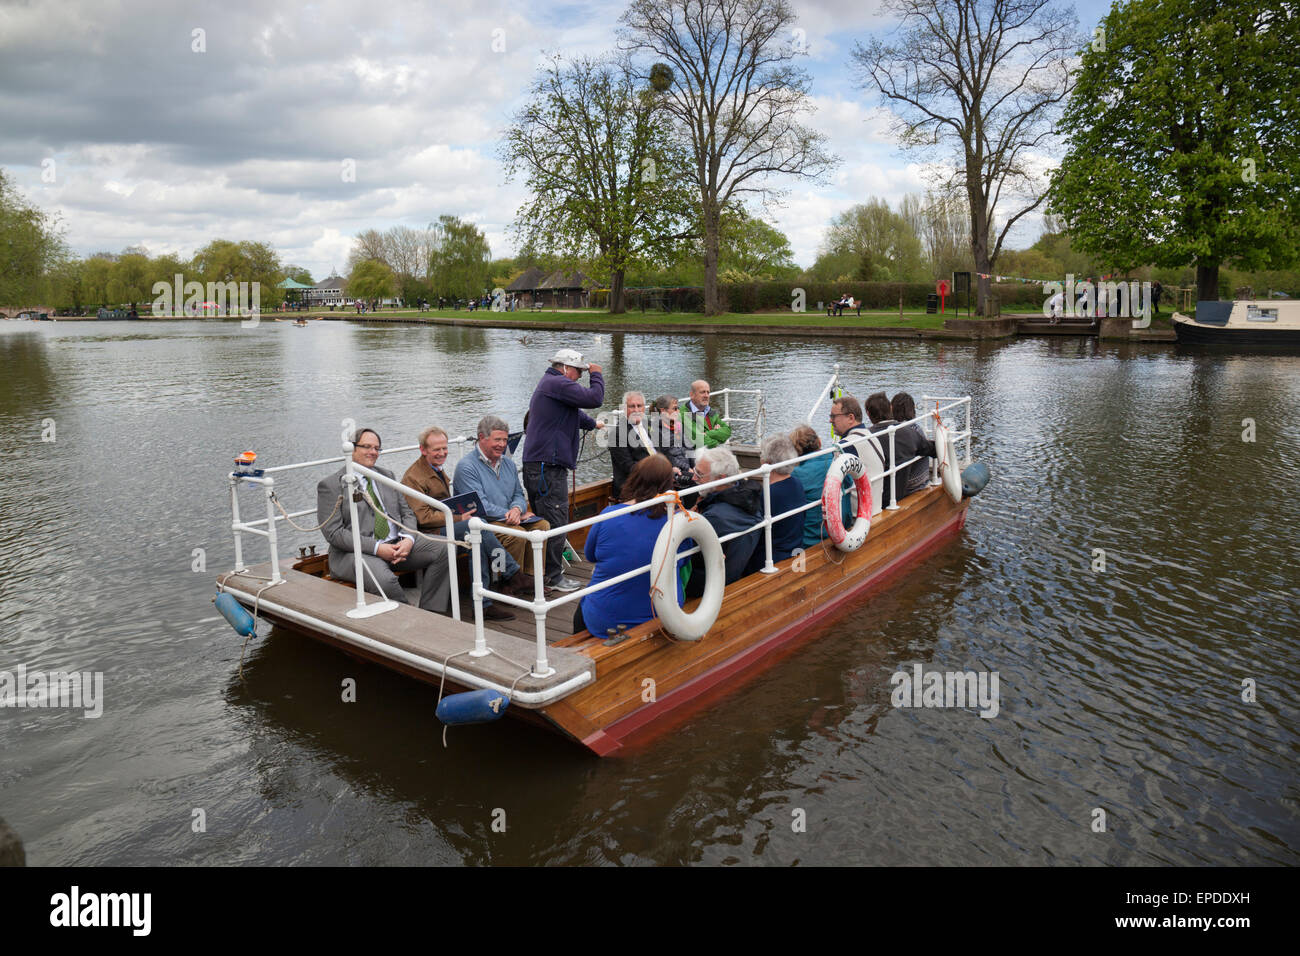 Catena traversata in traghetto del Fiume Avon, Stratford-upon-Avon, Warwickshire, Inghilterra, Regno Unito, Europa Foto Stock